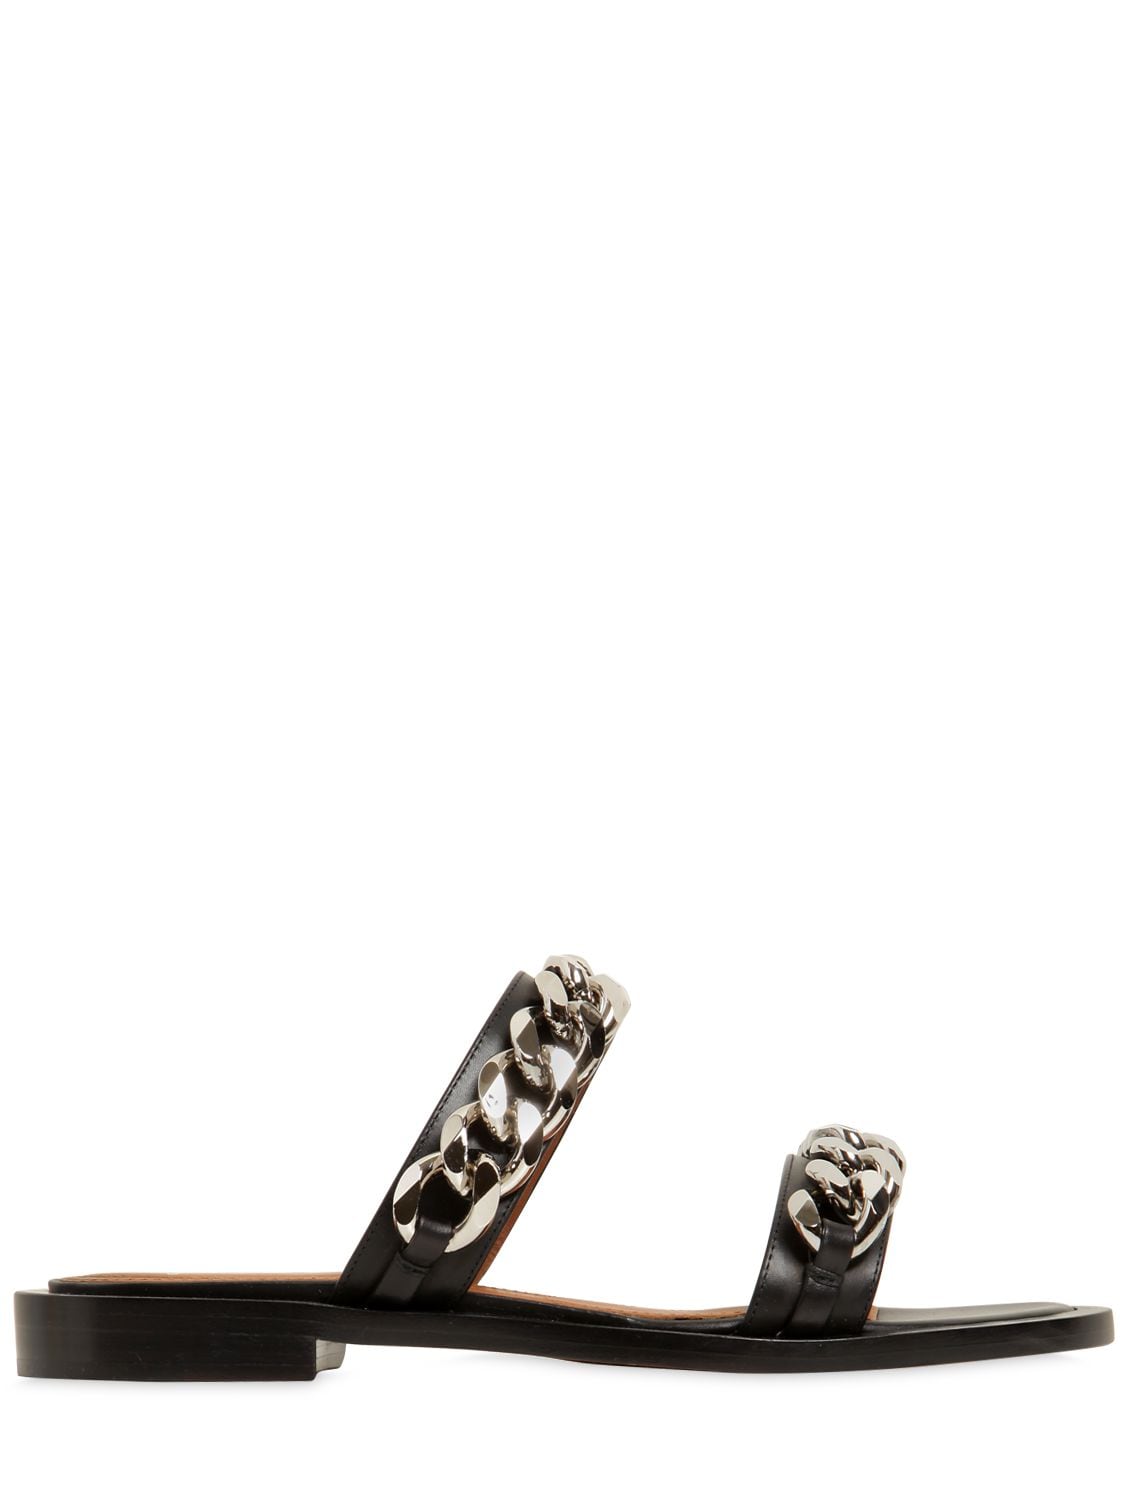 Givenchy Chain-Embellished Leather Slide Sandals - Black Size 7.5 ...